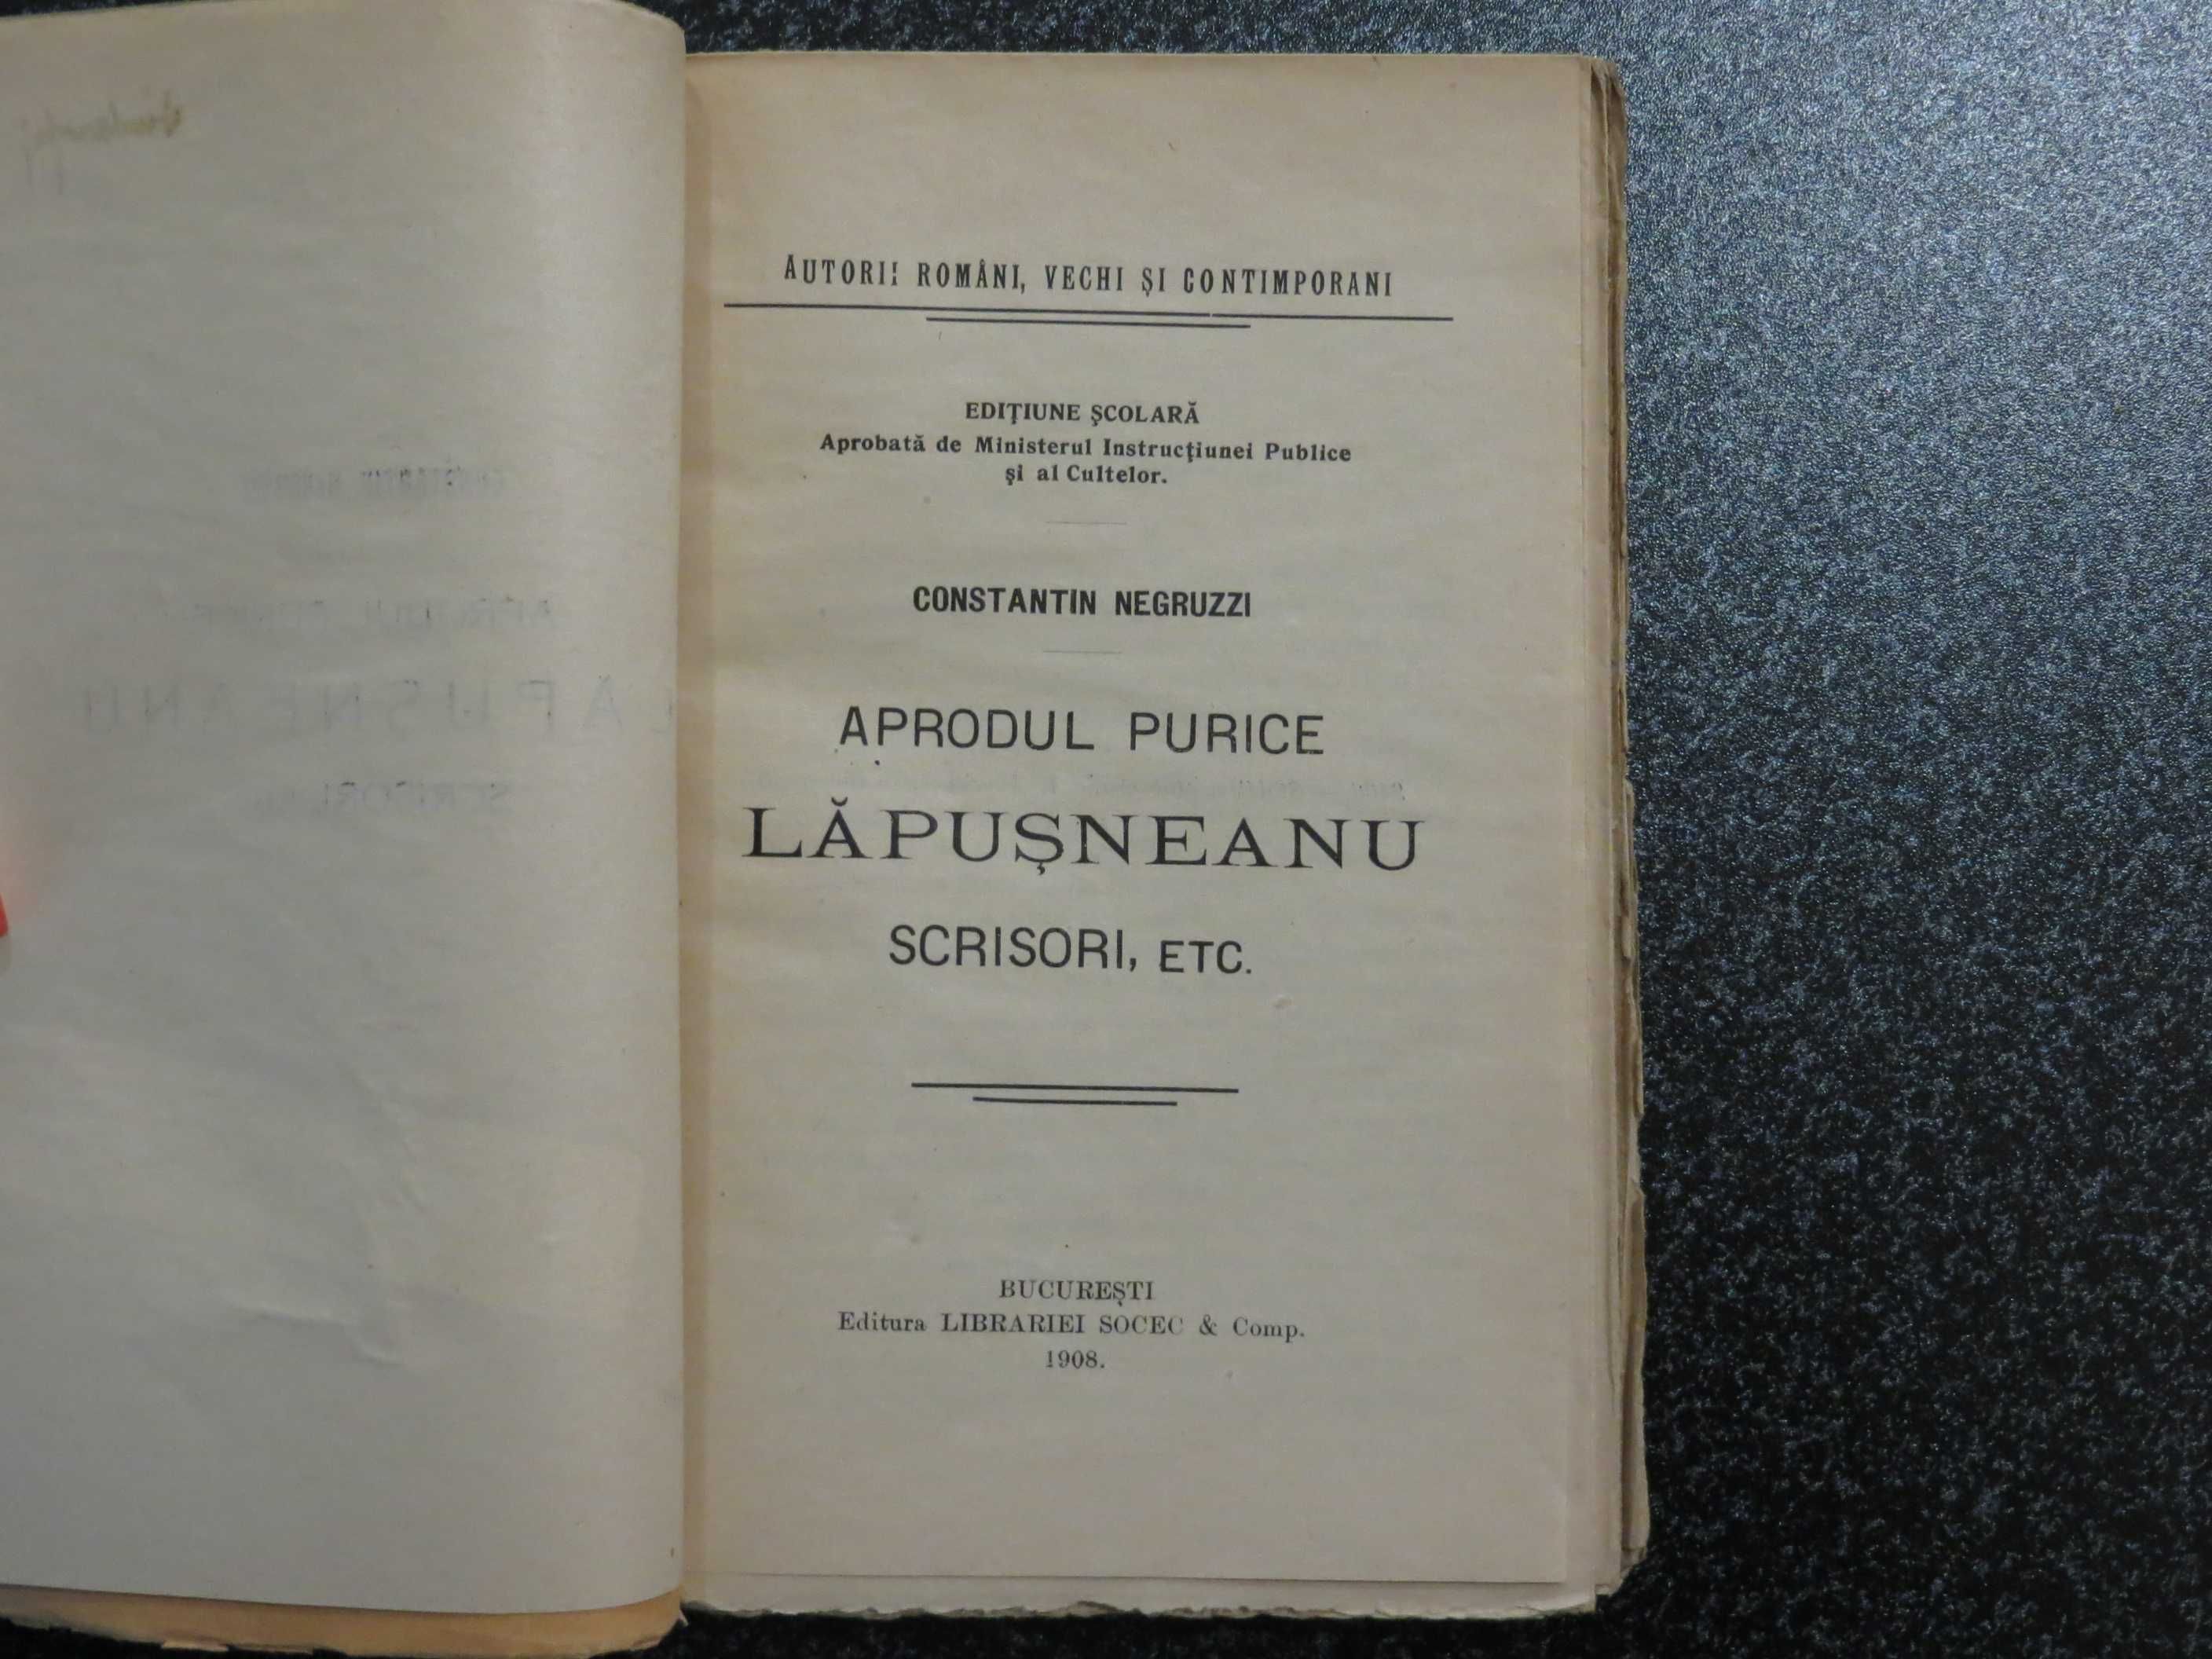 Aprodul Purice , Lapusneanu , scrisori ,etc. Constantin Negruzzi 1908